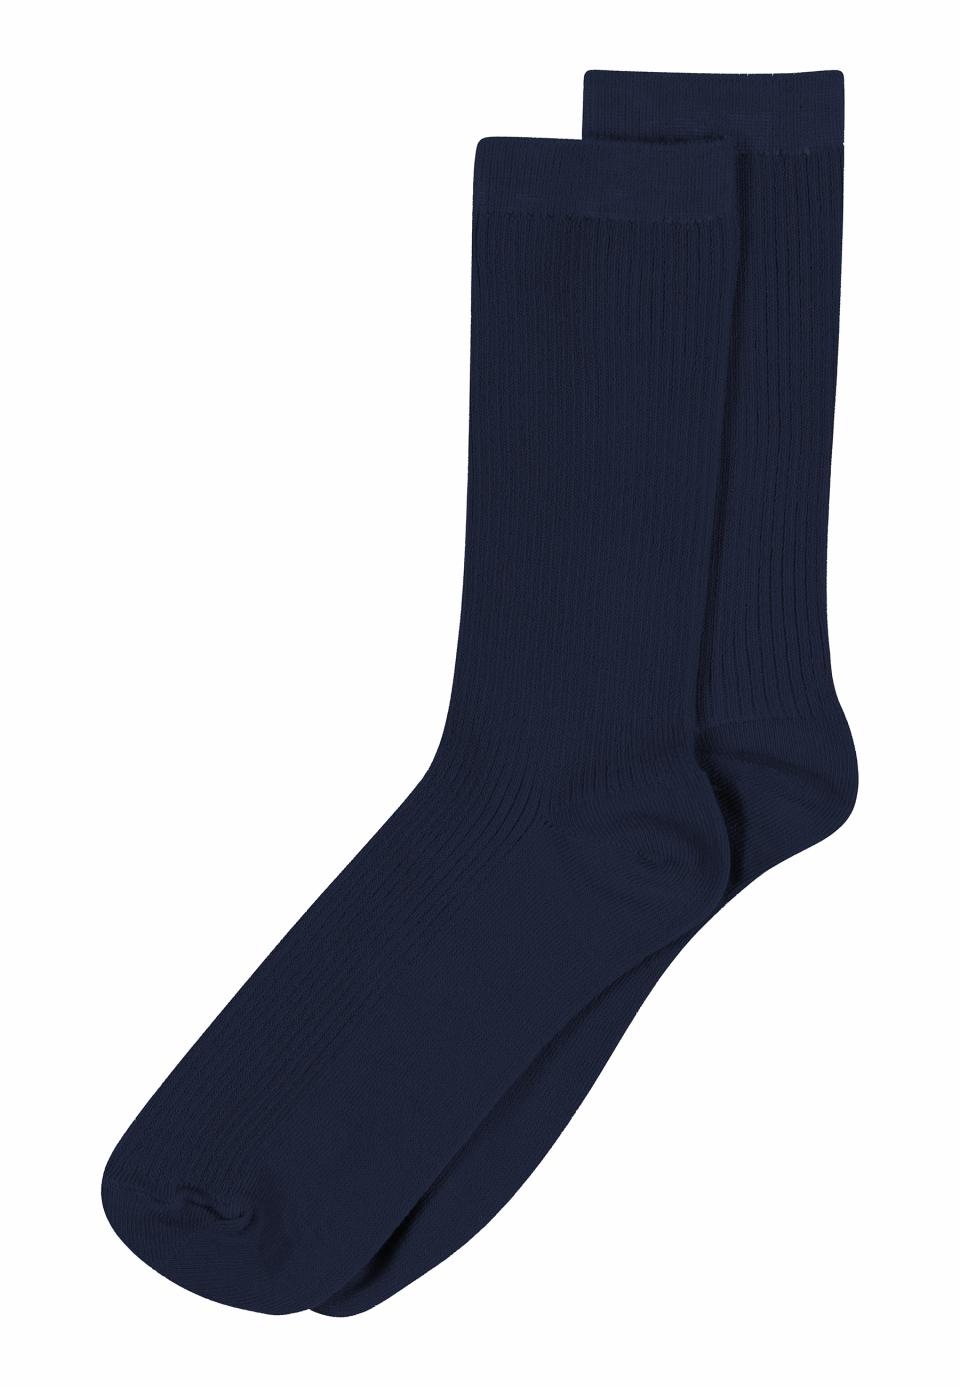 Fine Cotton Socks, Navy, fra MP Denmark